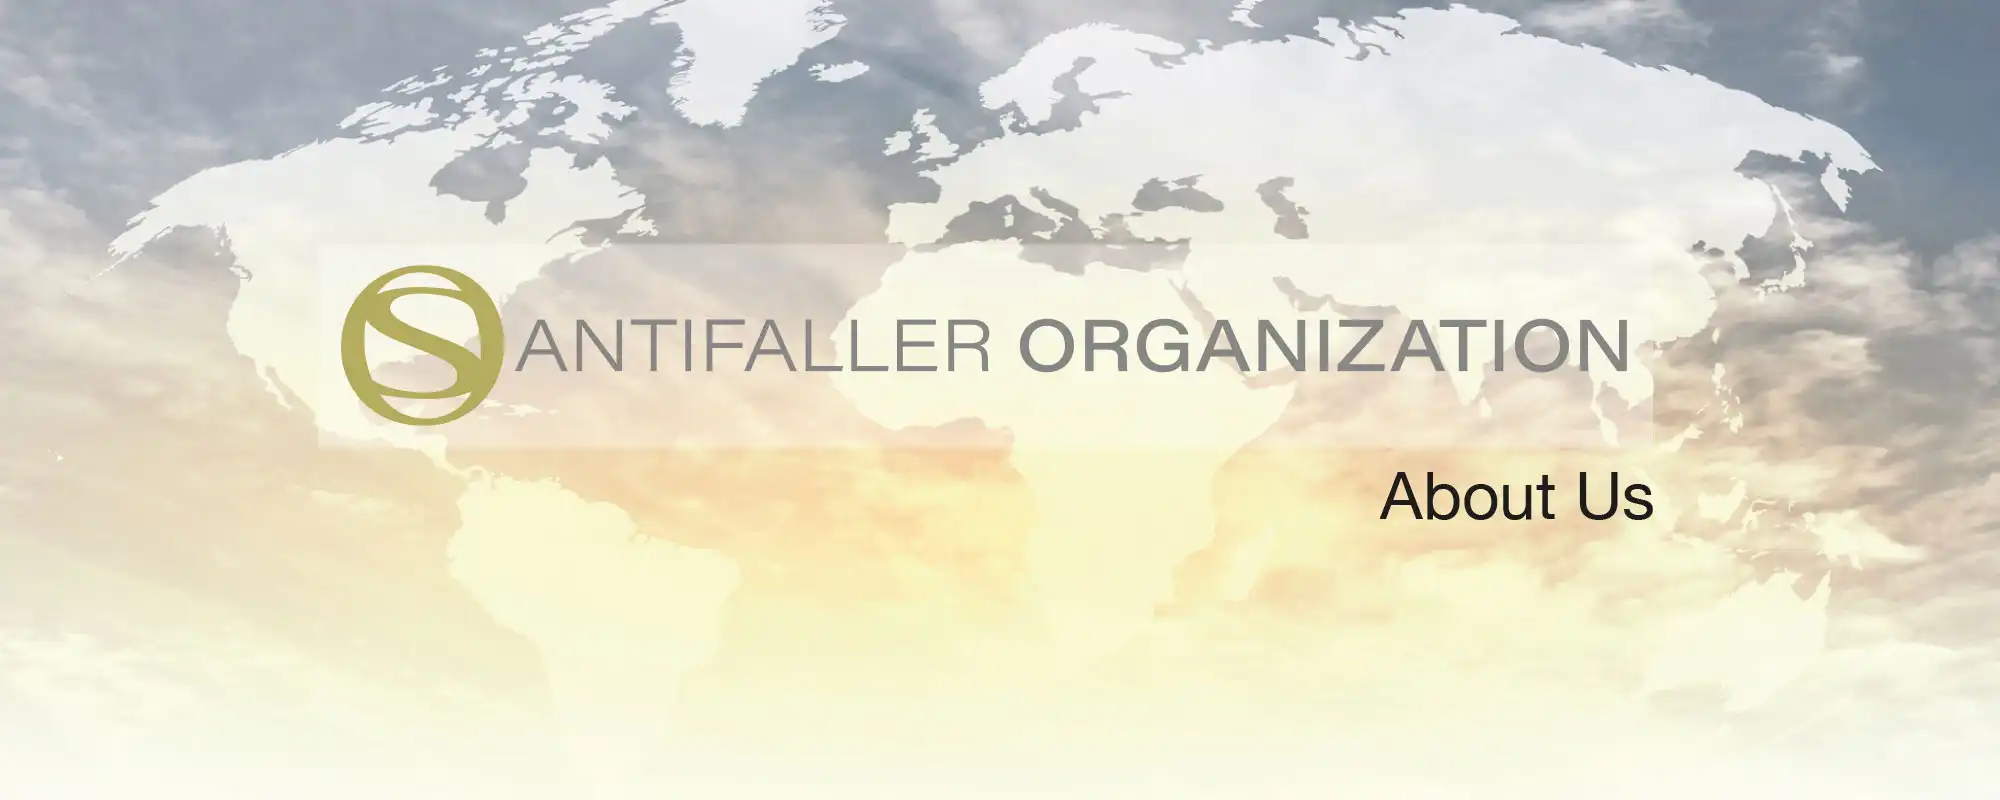 Santifaller-Organization-About-Us-Header